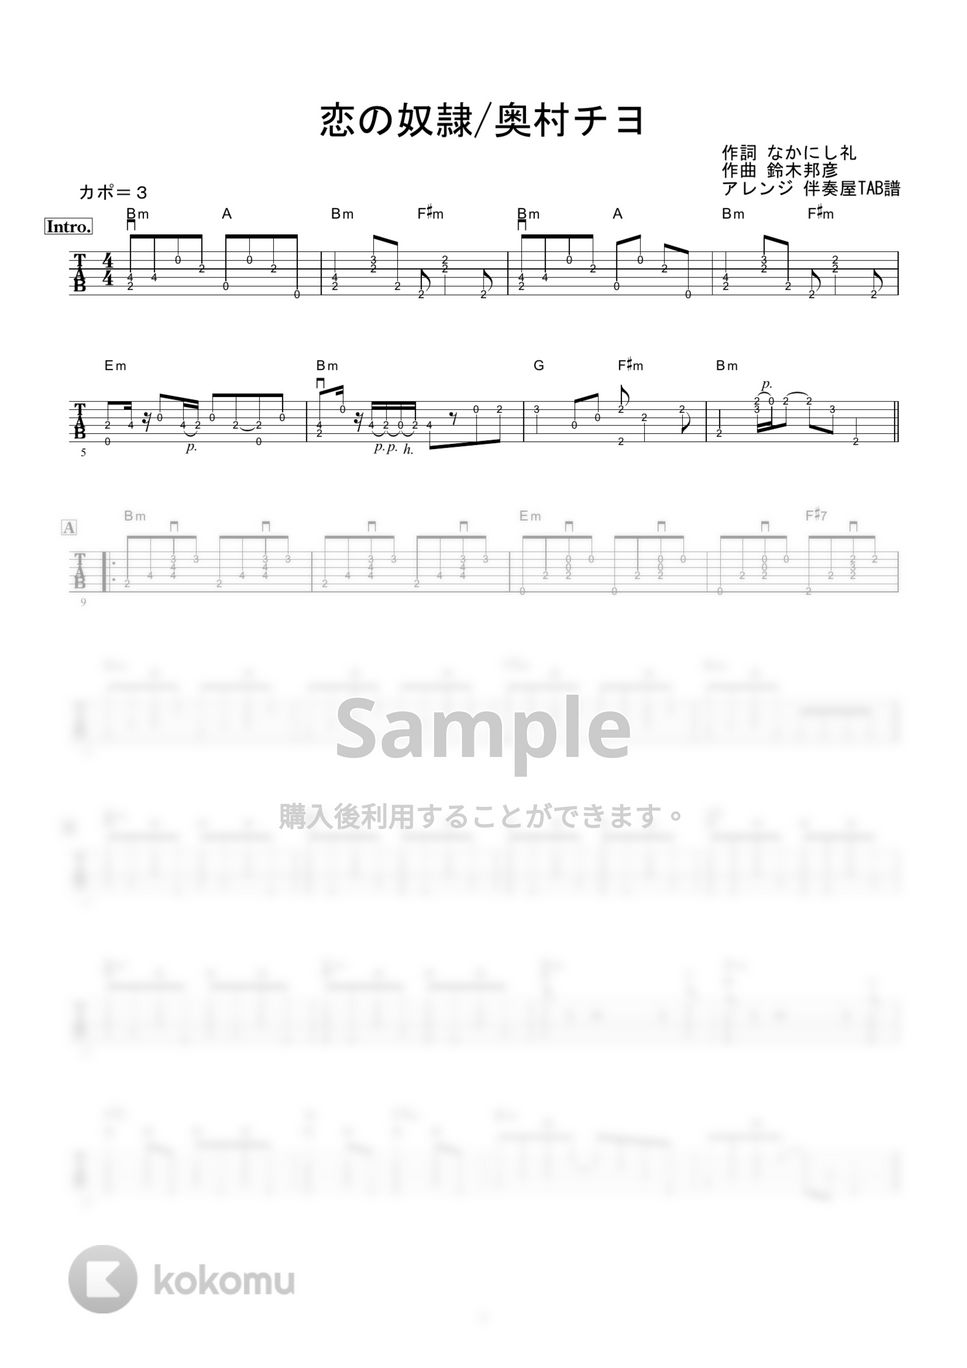 奥村チヨ - 恋の奴隷 (ギター伴奏/イントロ・間奏ソロギター) by 伴奏屋TAB譜